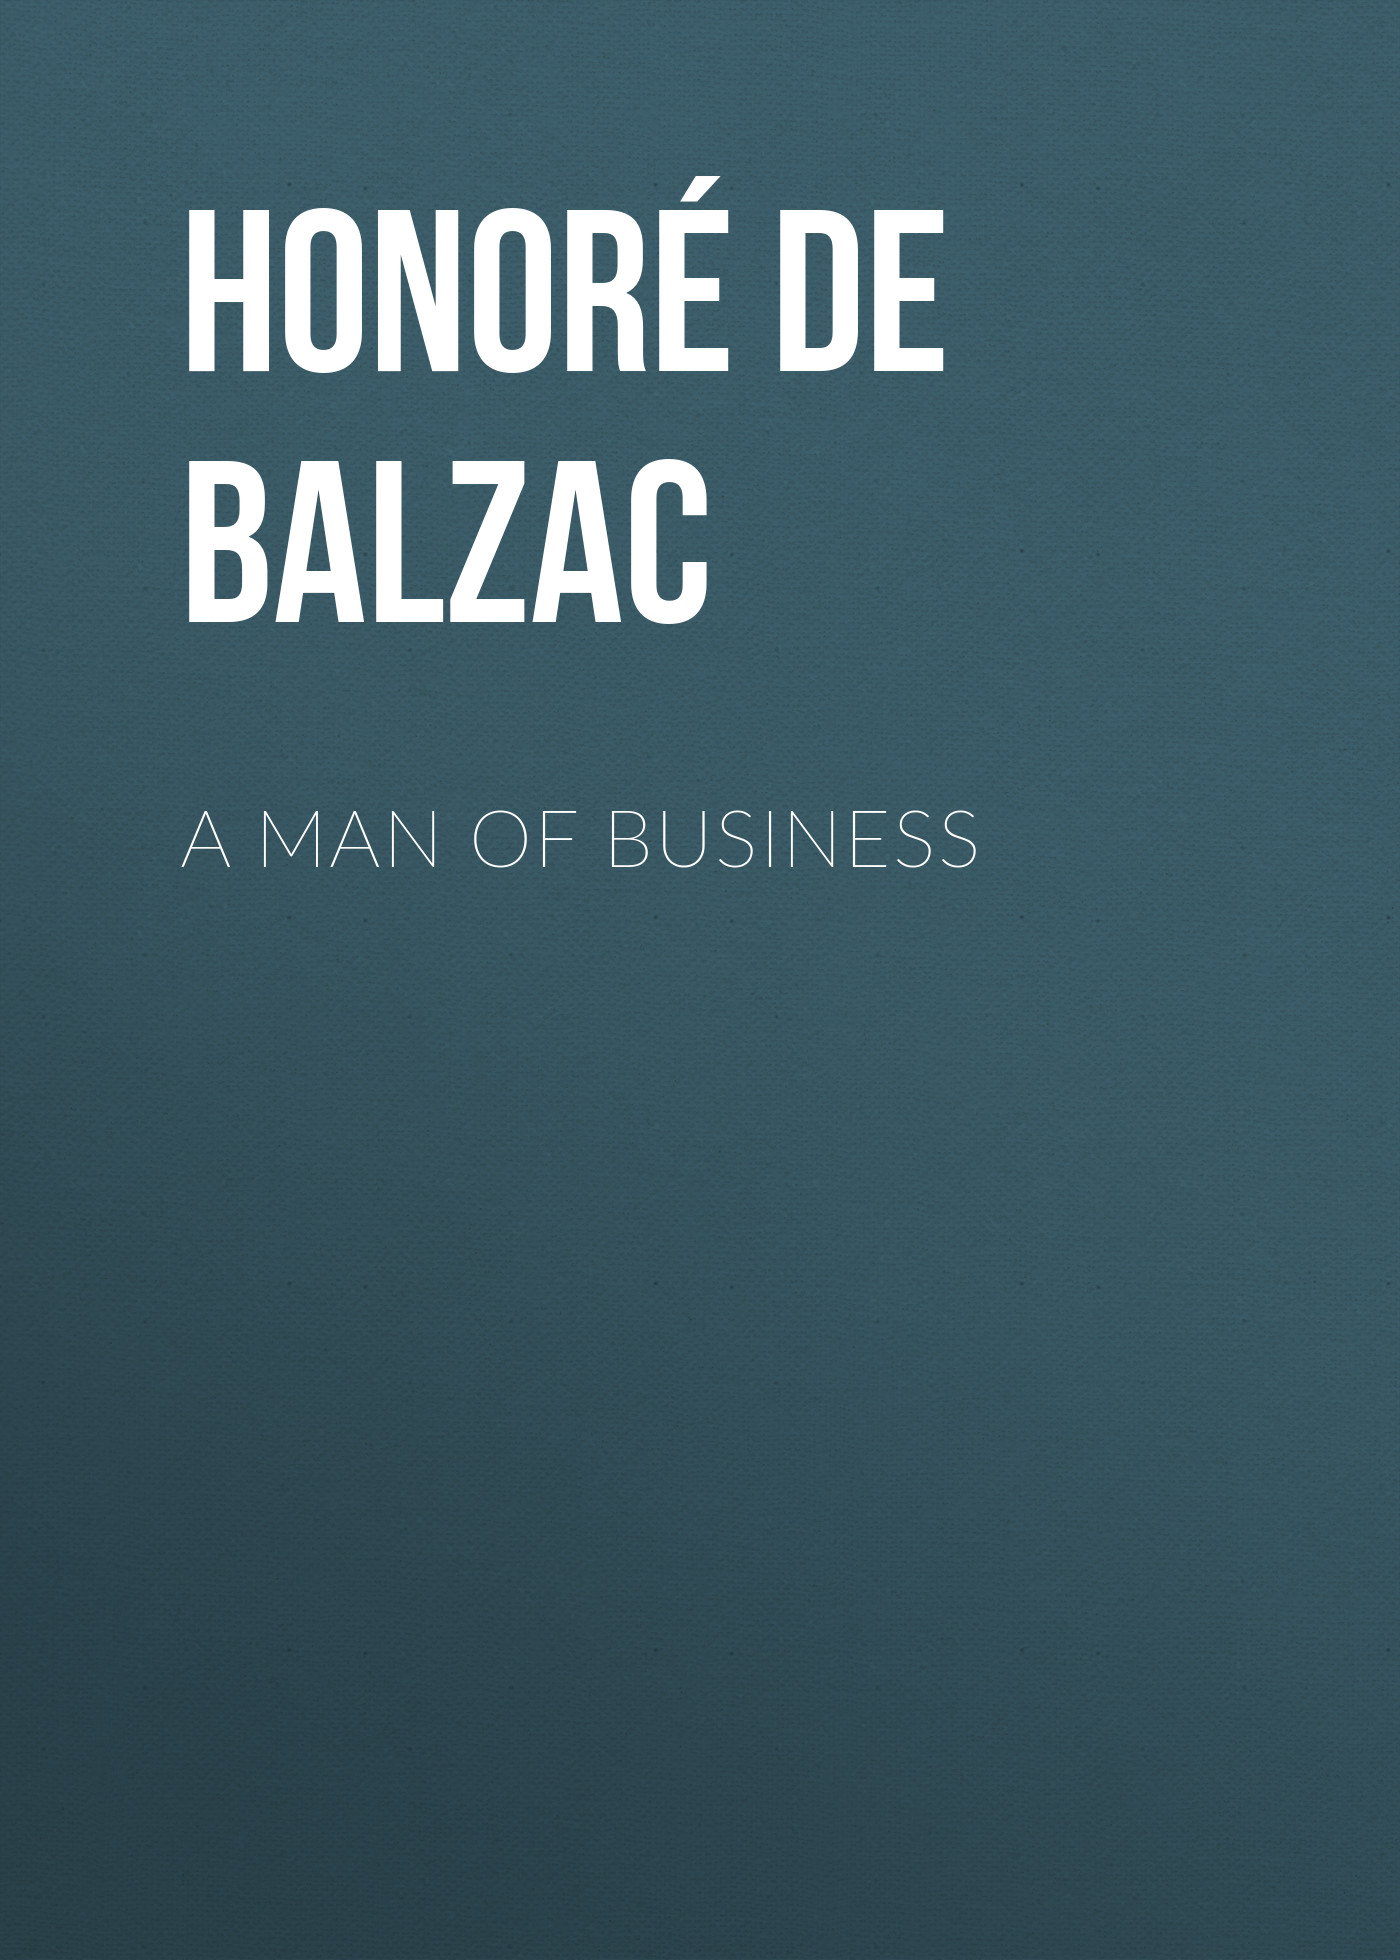 Книга A Man of Business из серии , созданная Honoré Balzac, может относится к жанру Литература 19 века, Зарубежная старинная литература, Зарубежная классика. Стоимость электронной книги A Man of Business с идентификатором 25020075 составляет 0 руб.